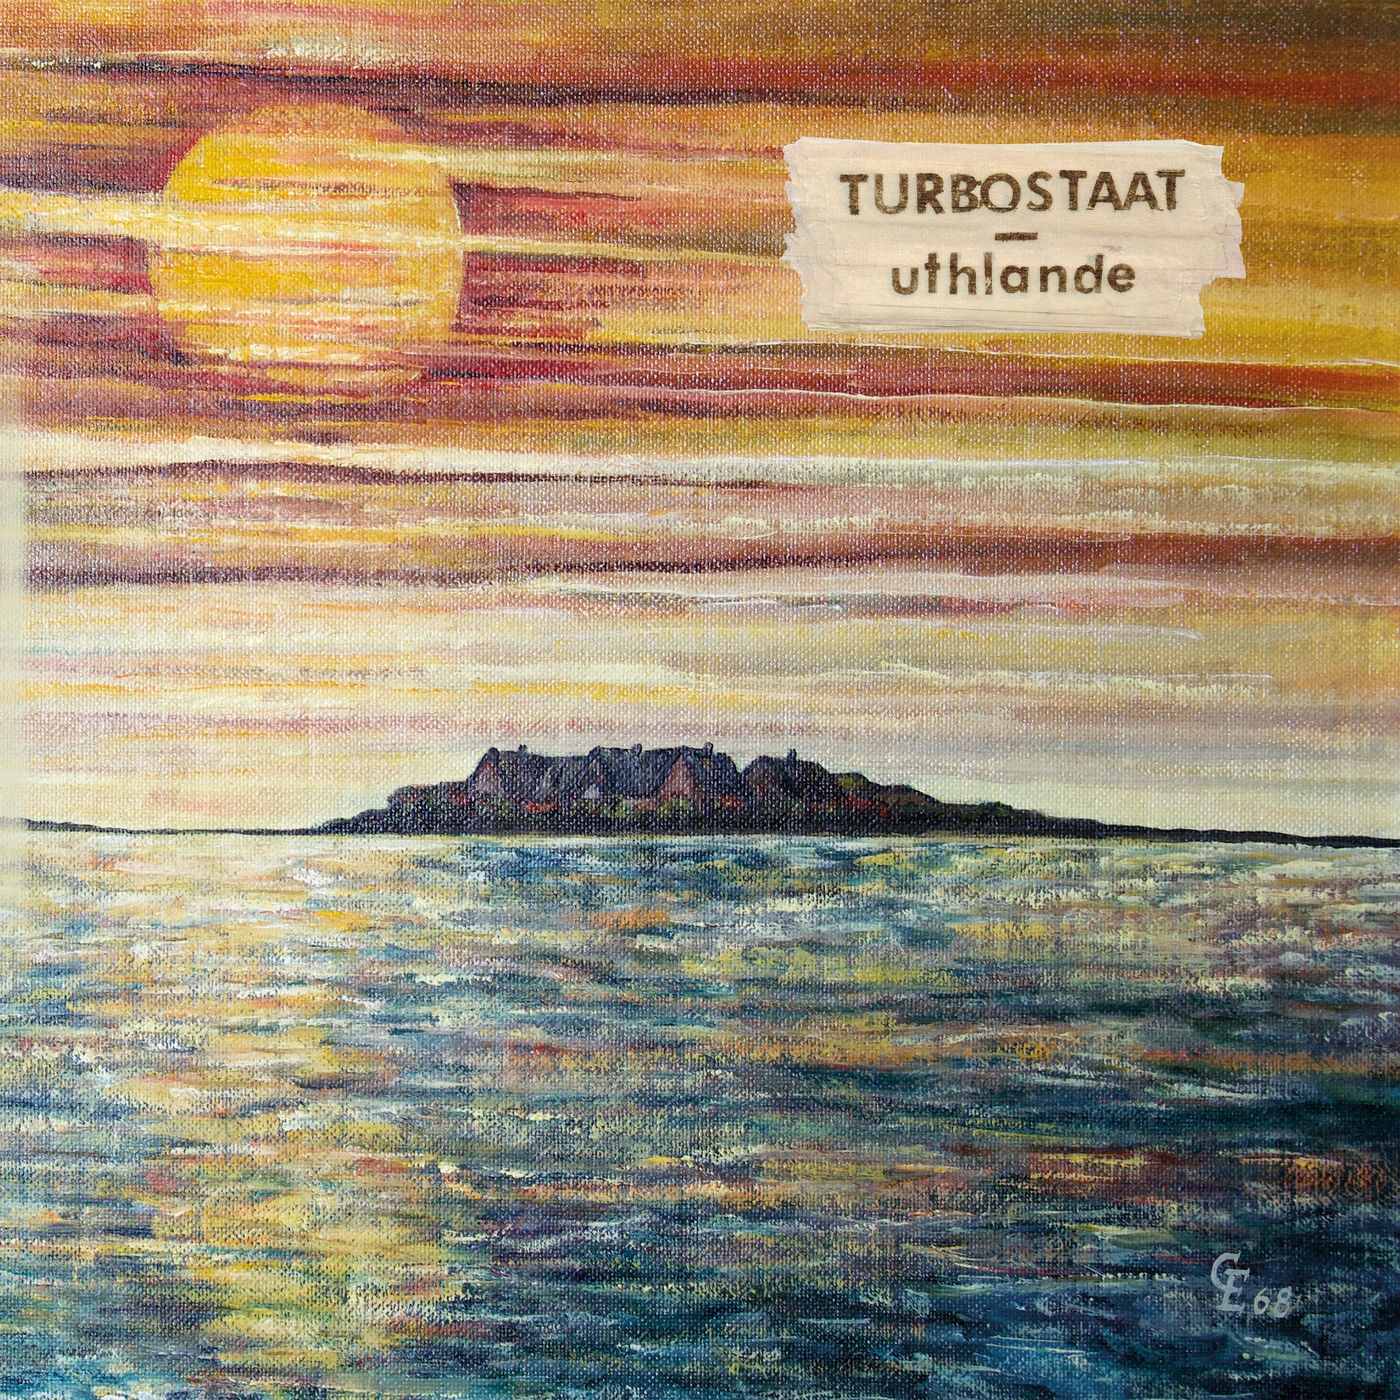 Turbostaat - Uthlande (2020)